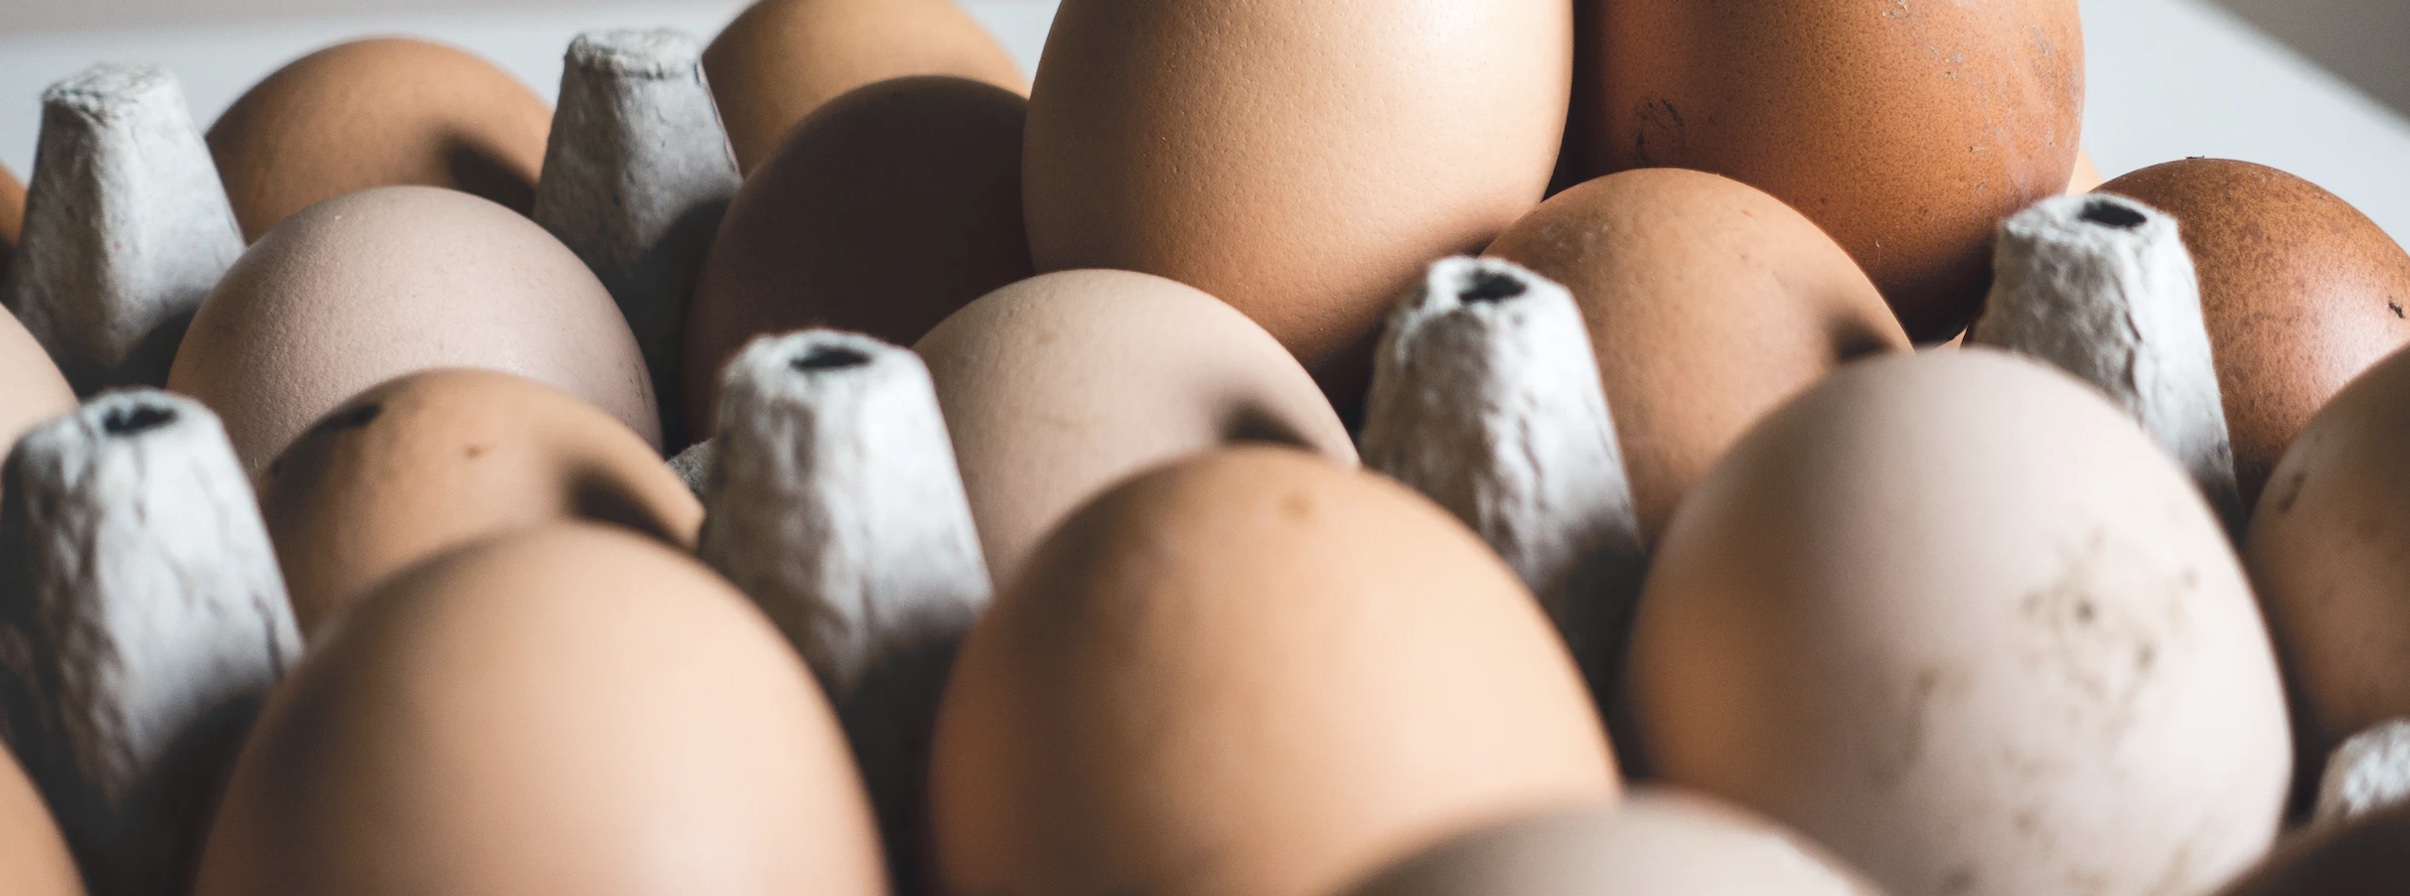 Снизить цены на яйца требует от супермаркетов ФАС: что будет с курятиной